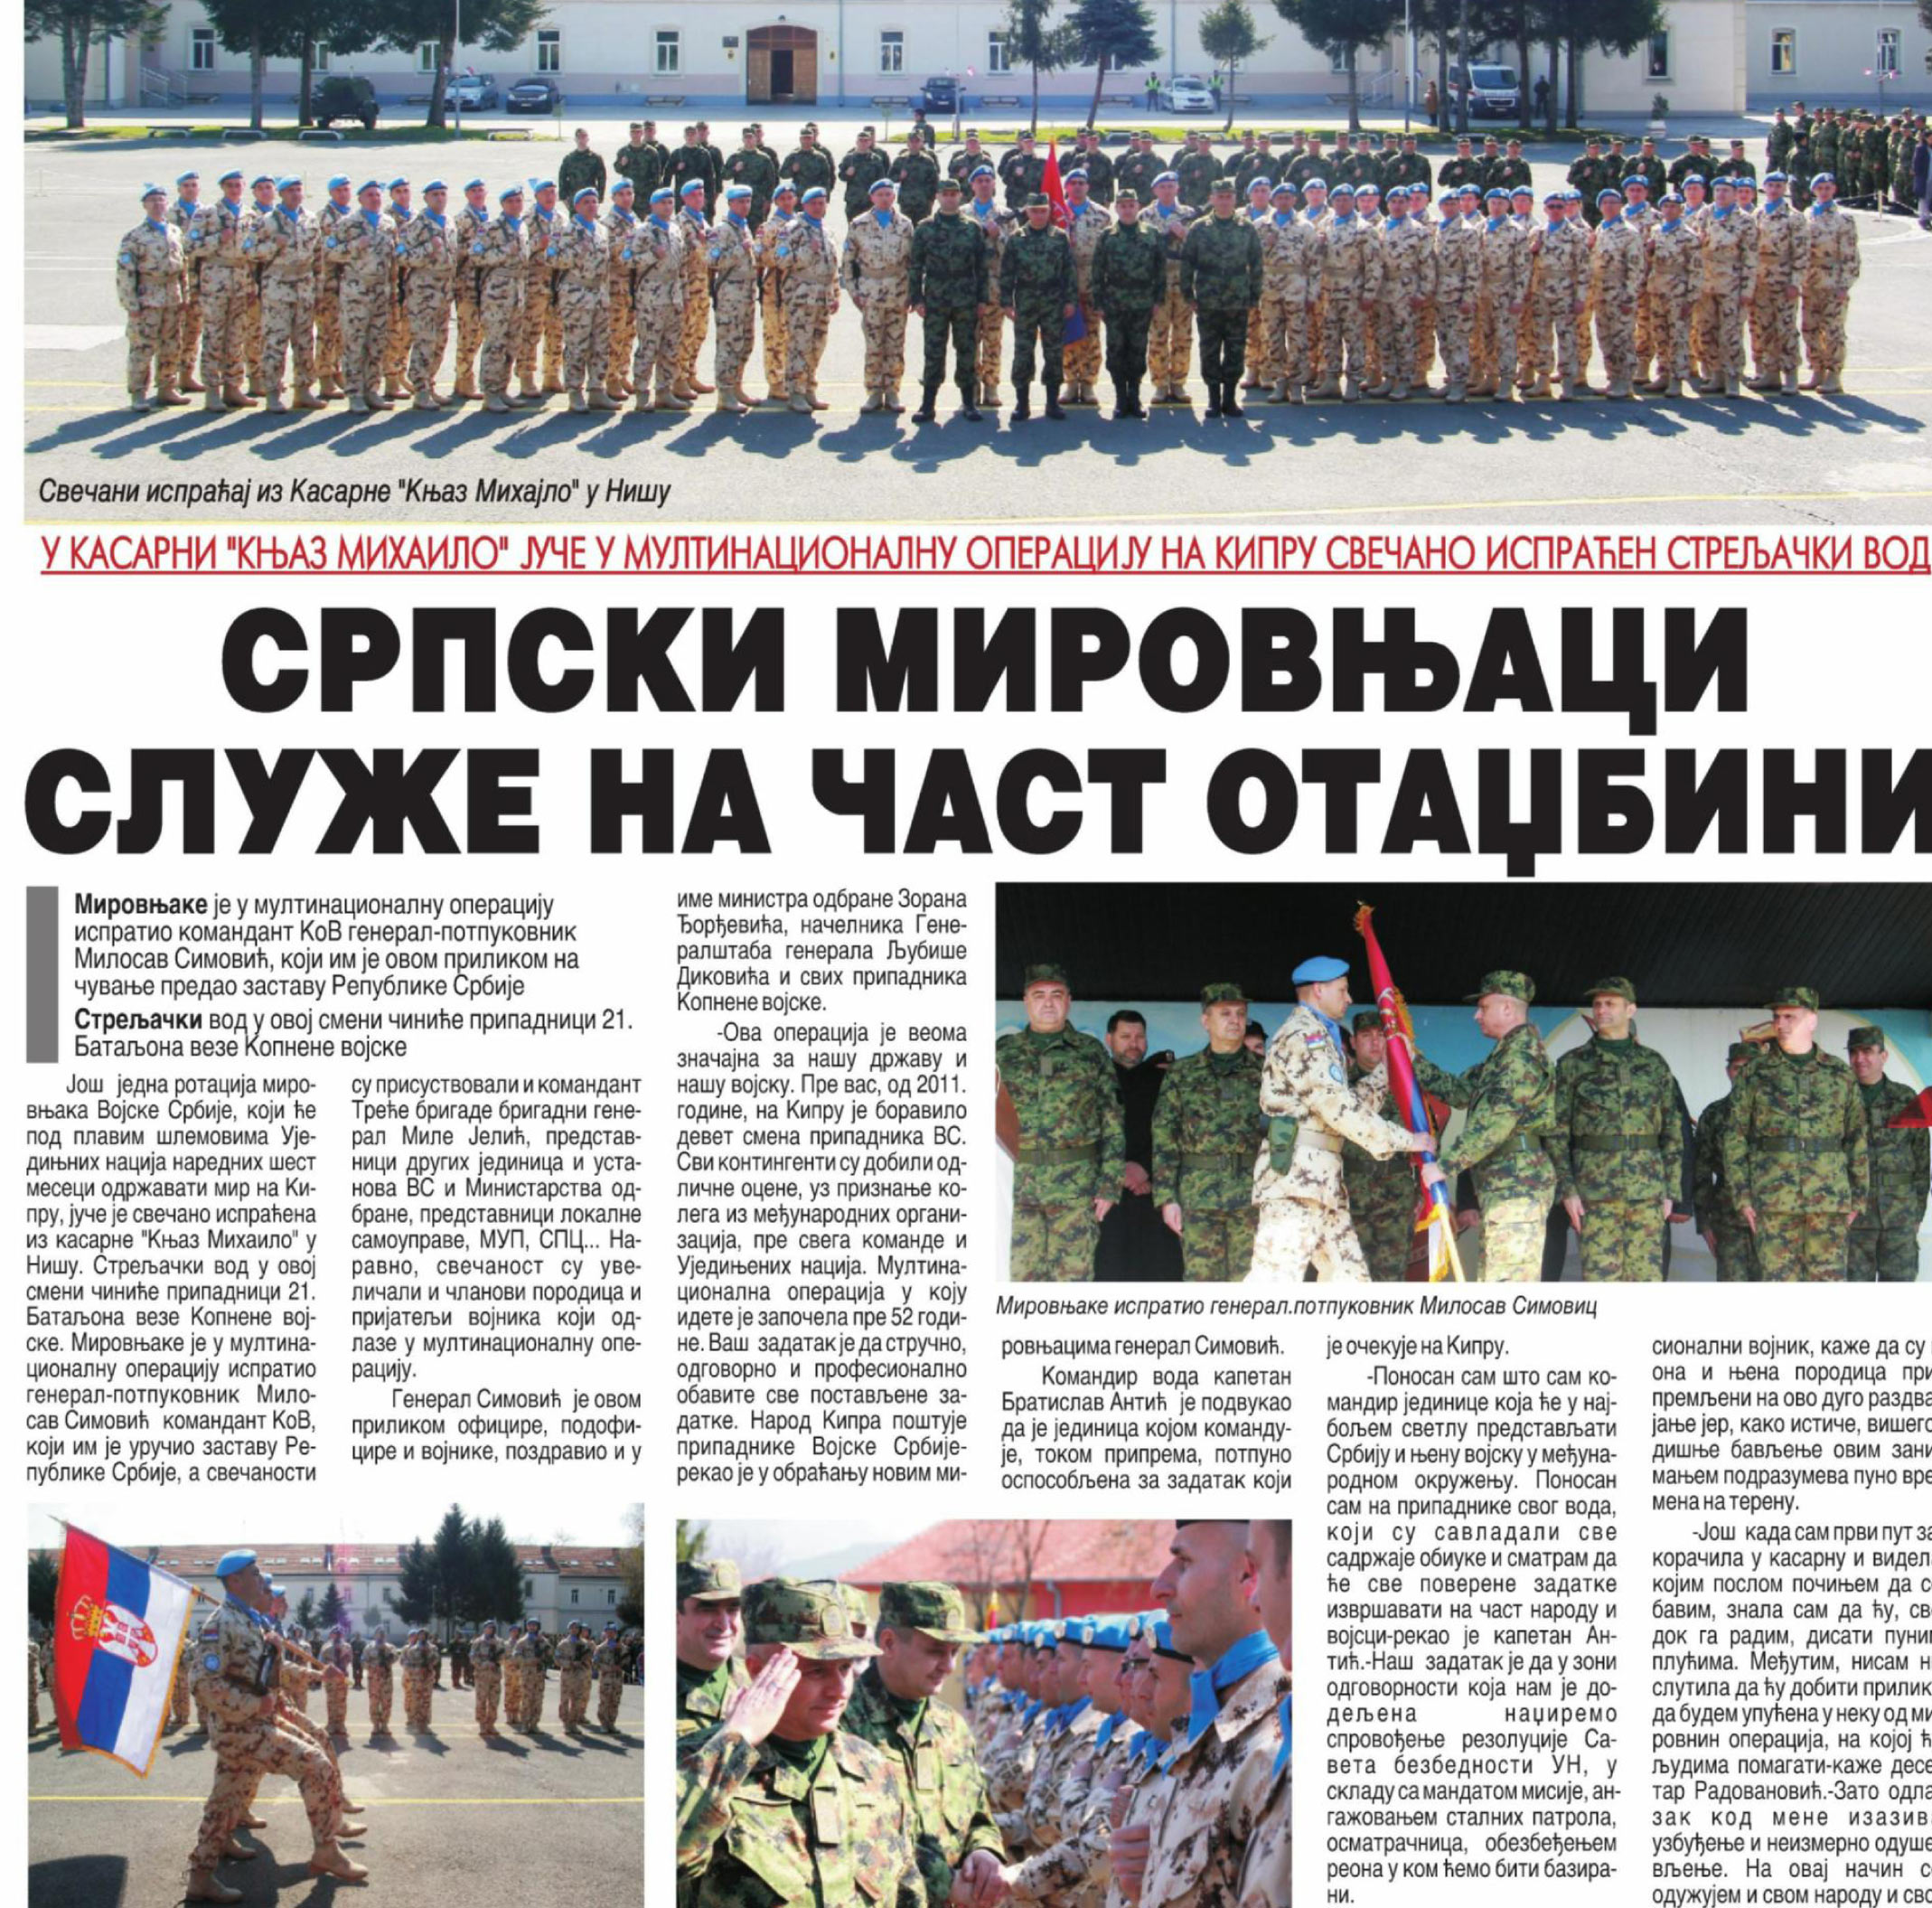 Српски мировњаци служе на част отаџбини